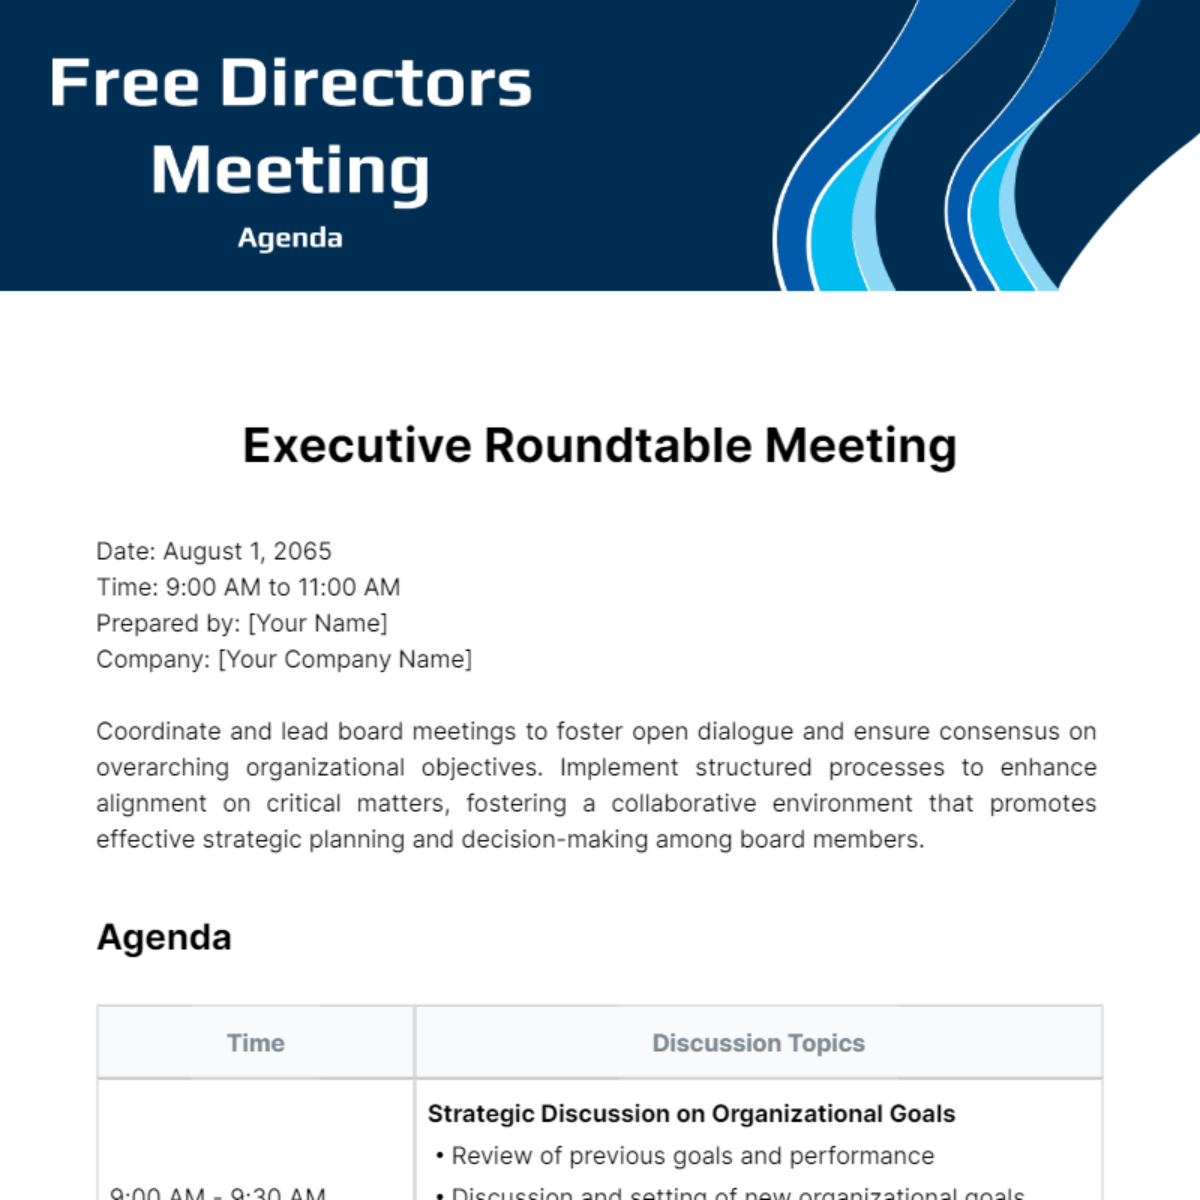 Free Directors Meeting Agenda Template